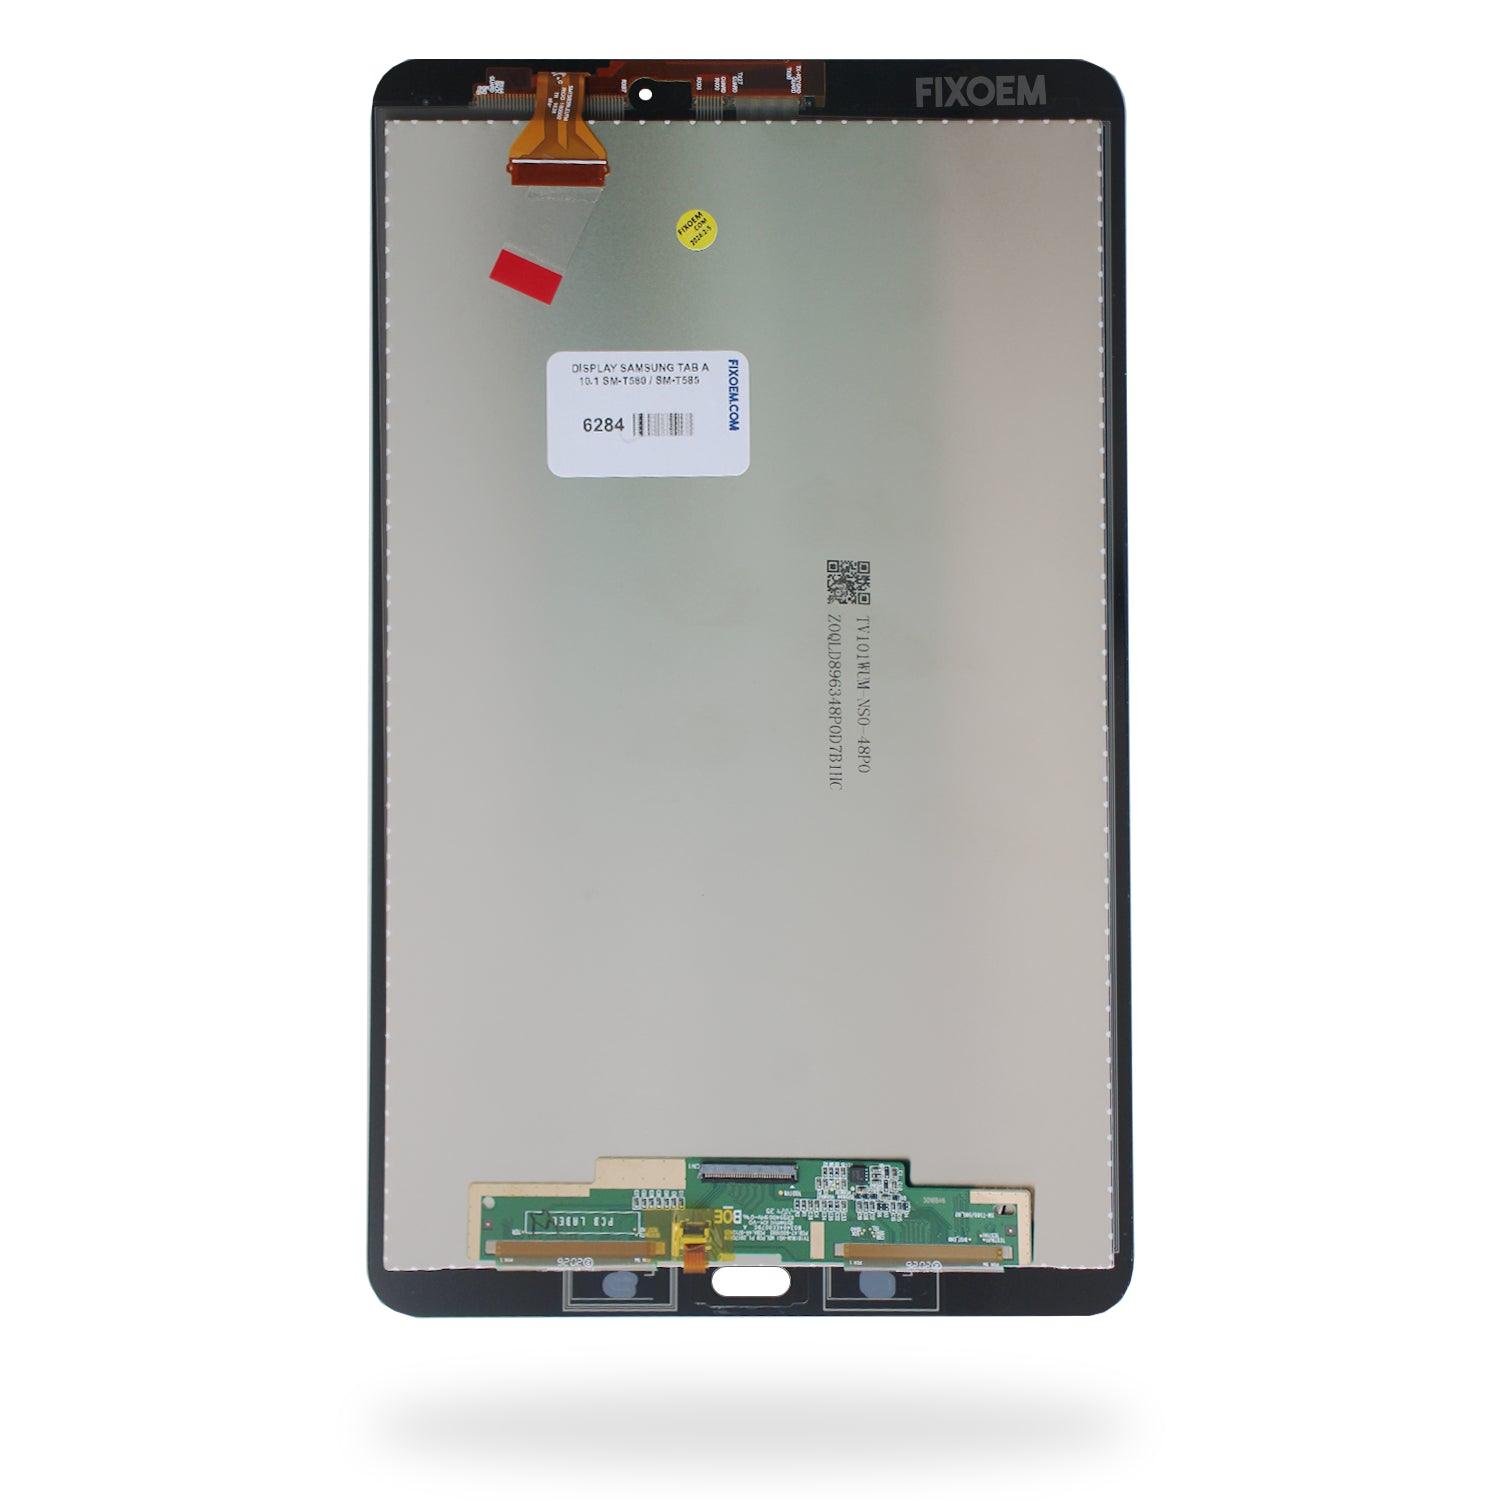 Display Samsung Tab A 10.1 Sm-T580 / Sm-T585 a solo $ 710.00 Refaccion y puestos celulares, refurbish y microelectronica.- FixOEM